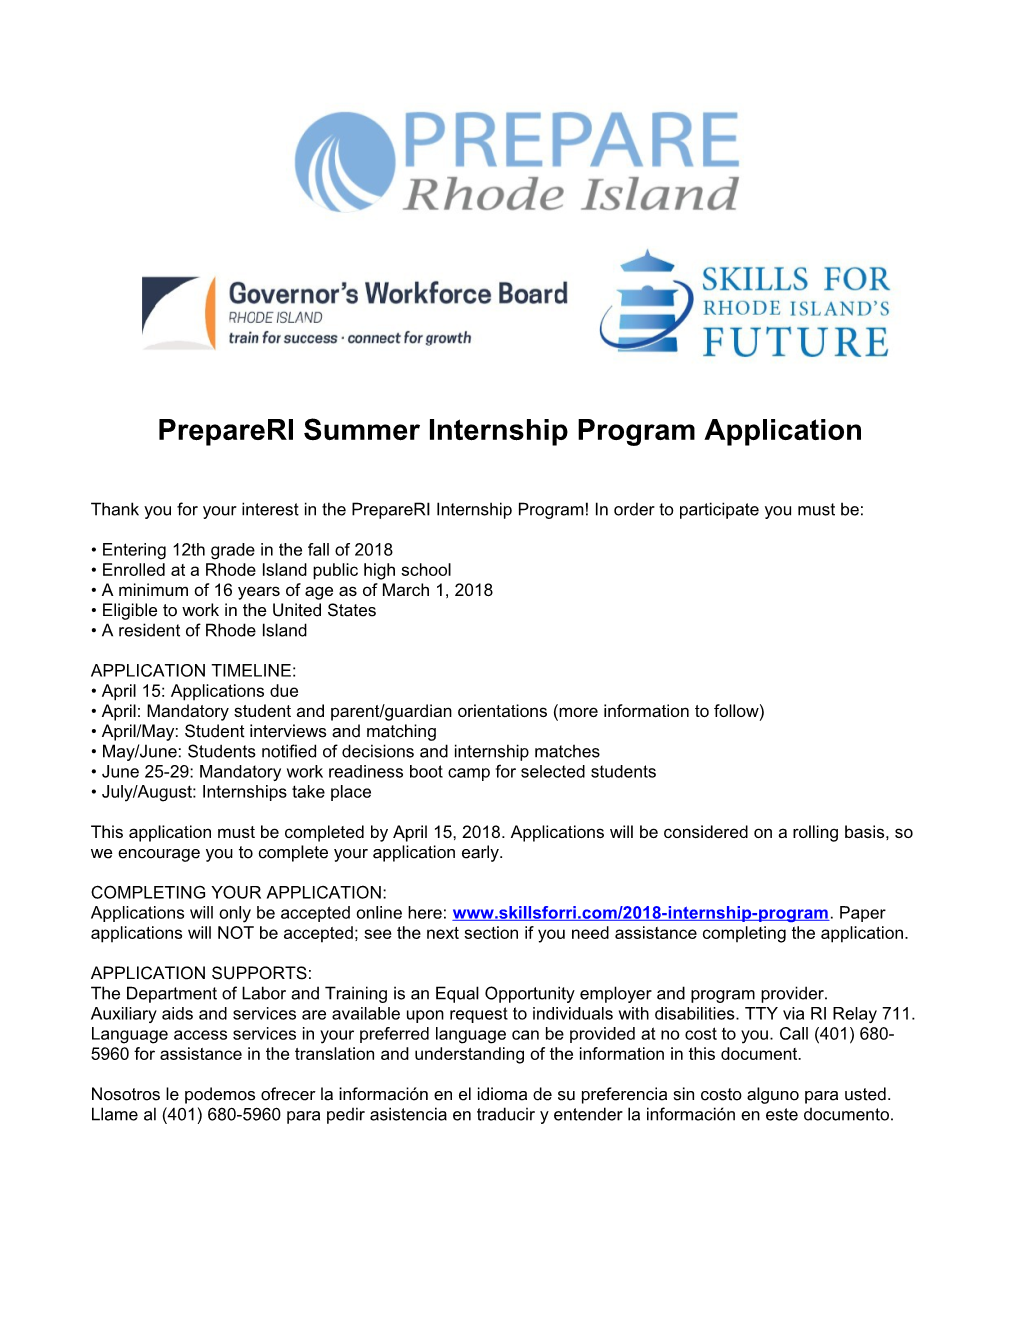 Prepareri Summer Internship Program Application